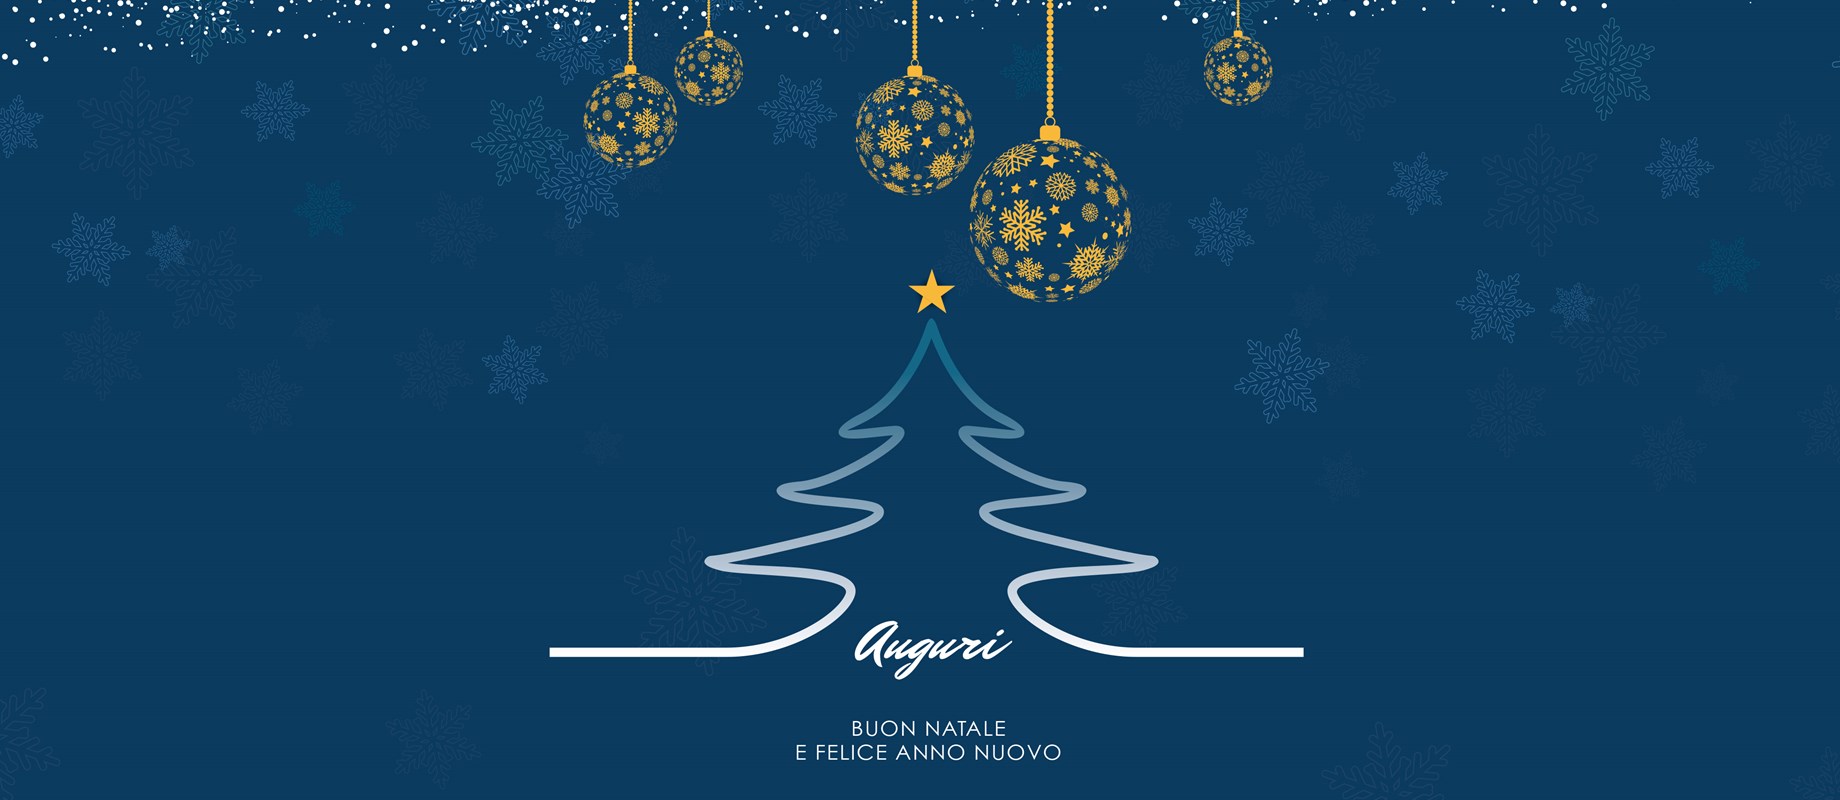 I migliori auguri di Buon Natale e Felice Anno Nuovo dalla Cassa Rurale FVG! 